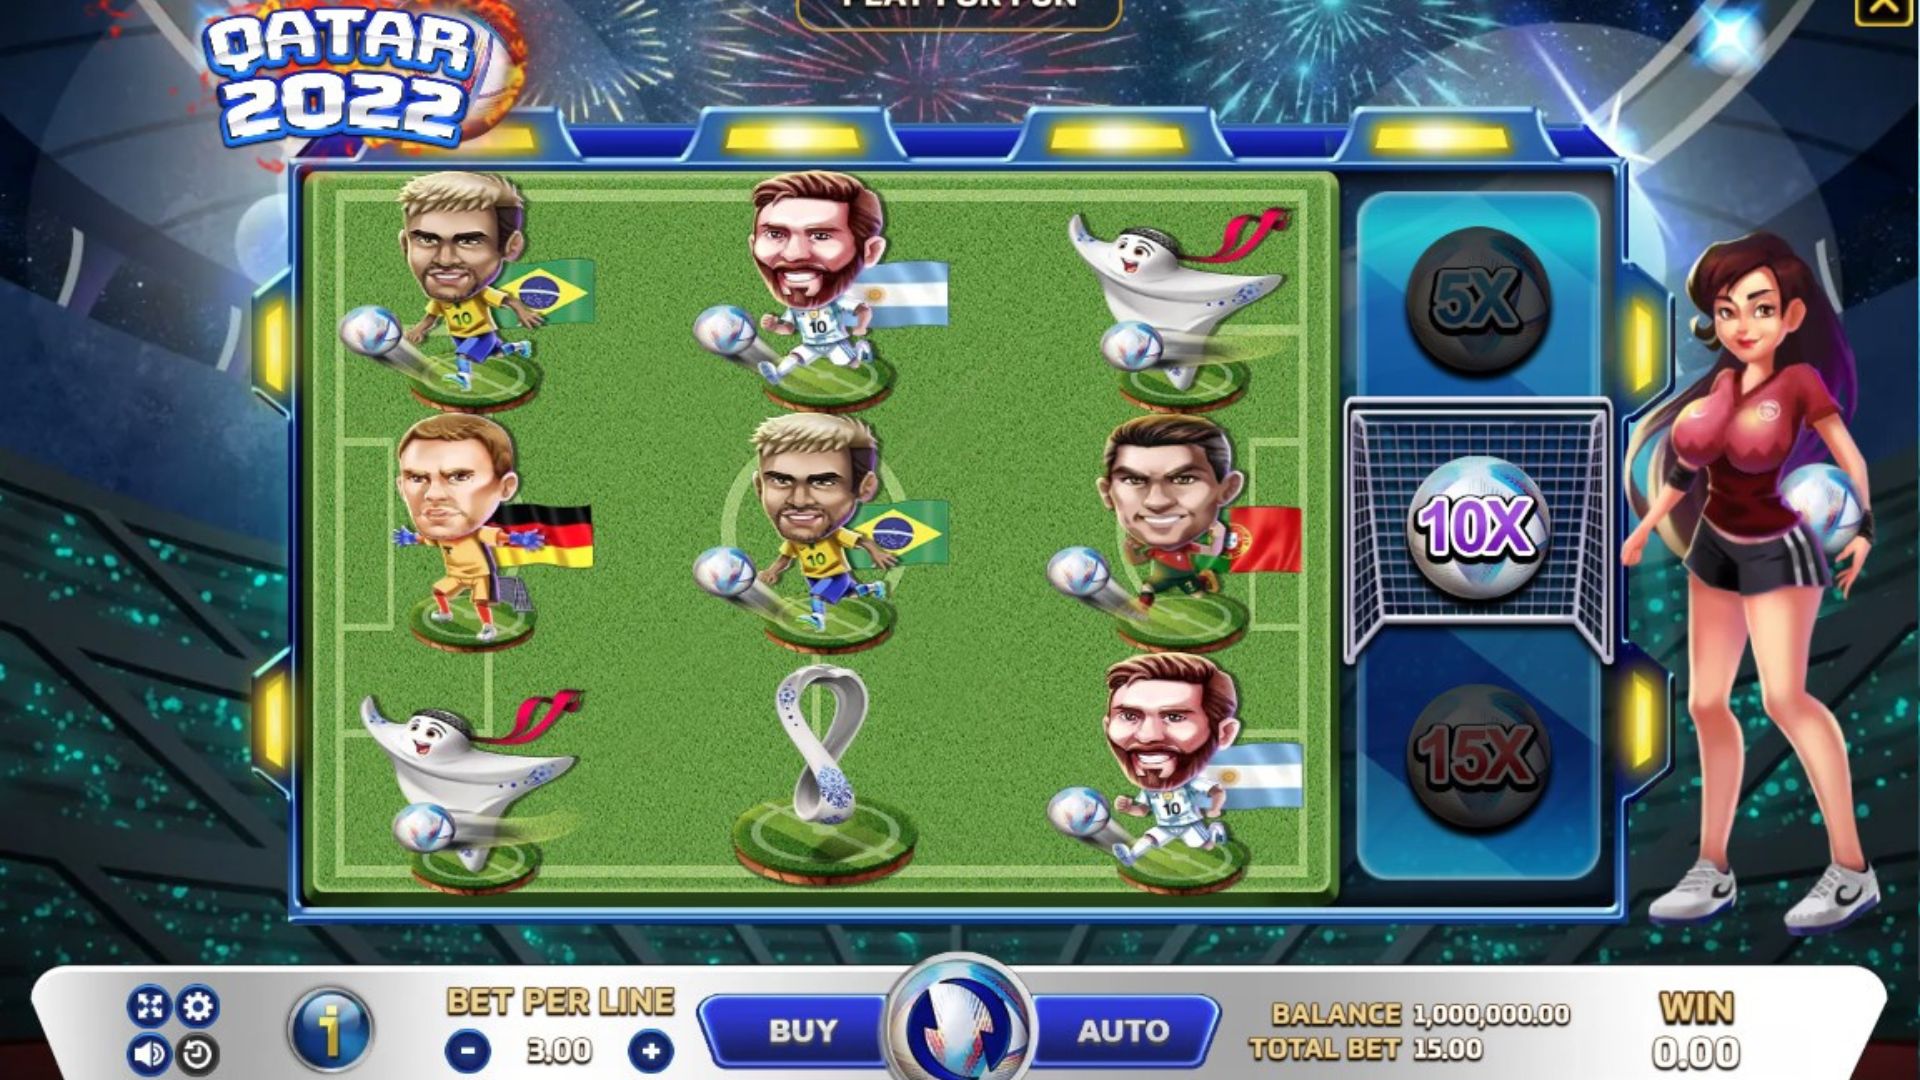 gameplay slot qatar 2022